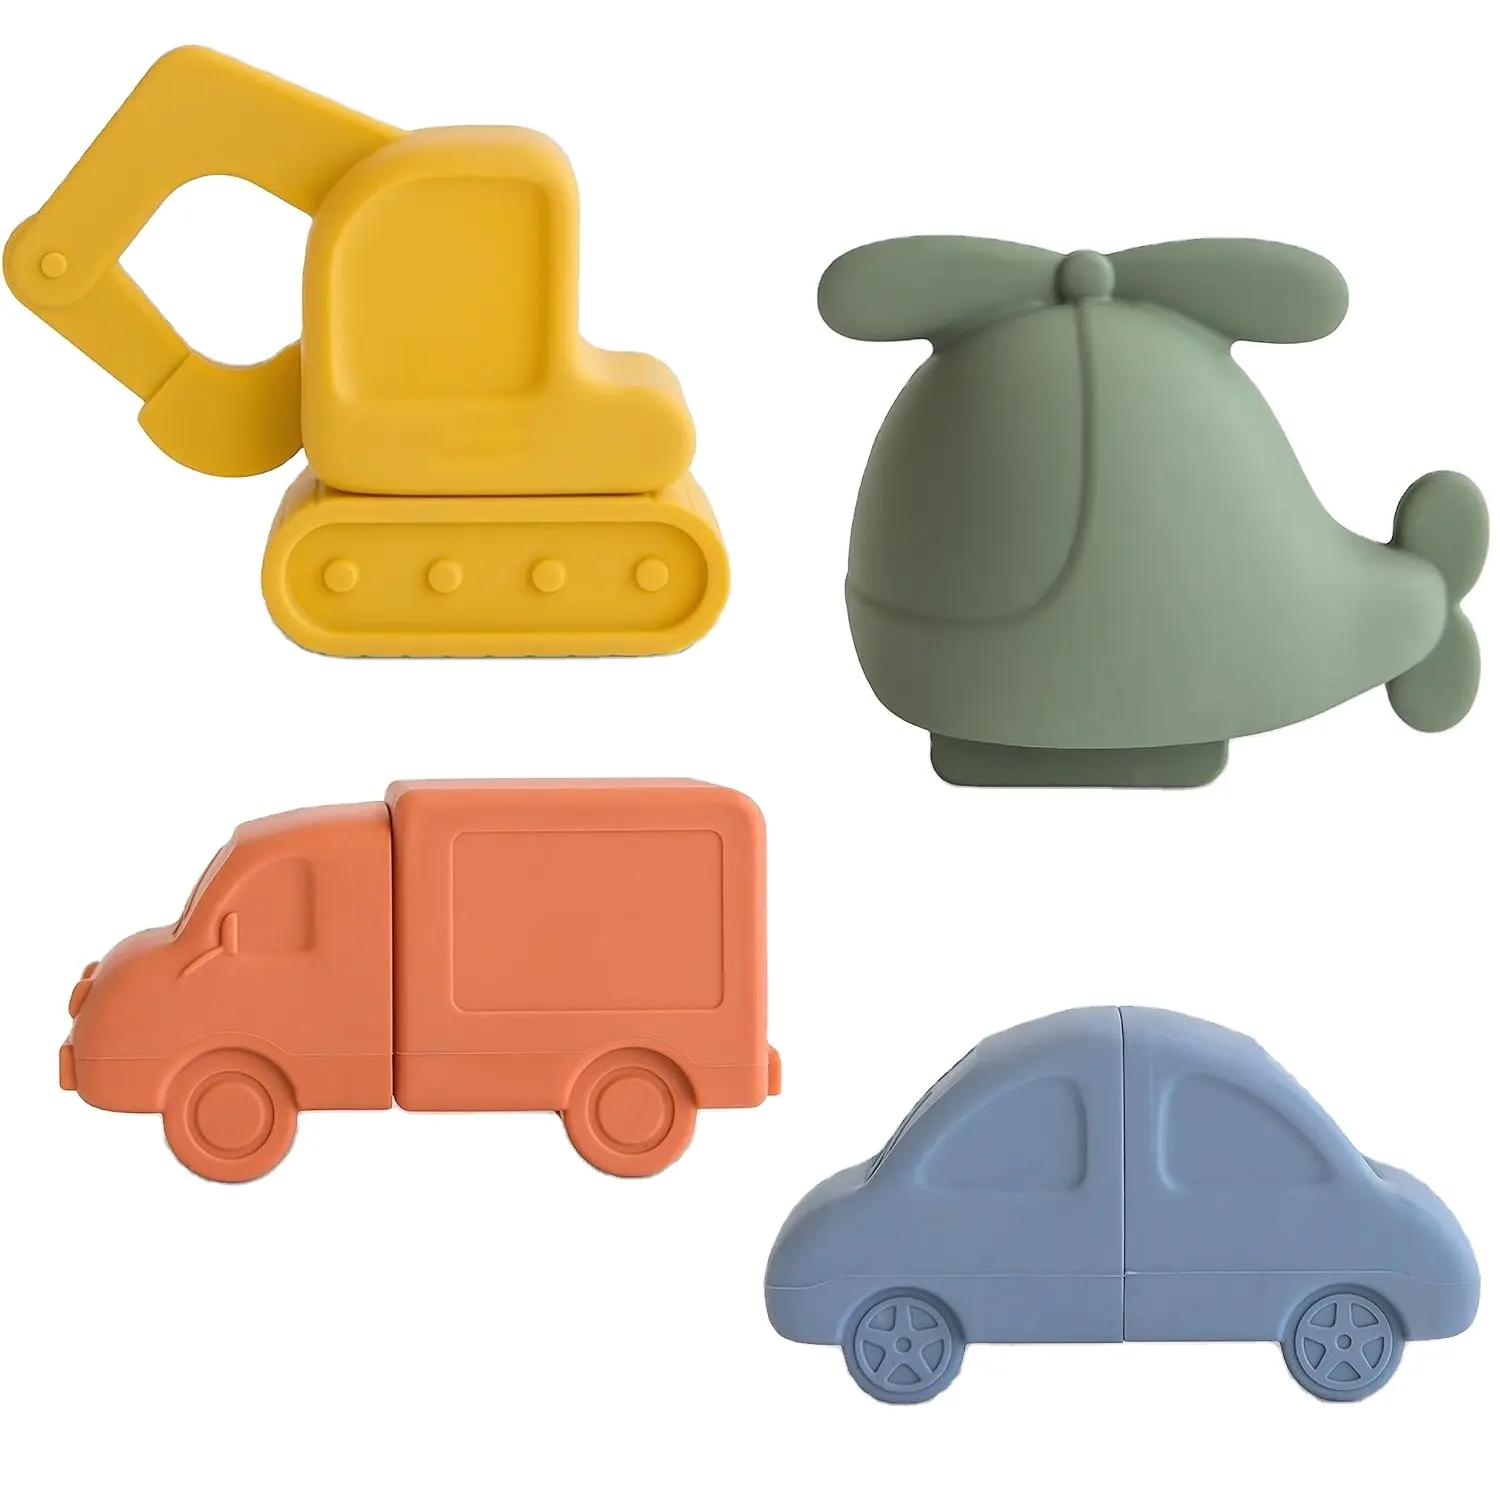 목욕 장난감 4 유아용 부동 차량 욕조 목욕 재미 헬리콥터, 자동차, 트럭 및 파는 사람을위한 실리콘